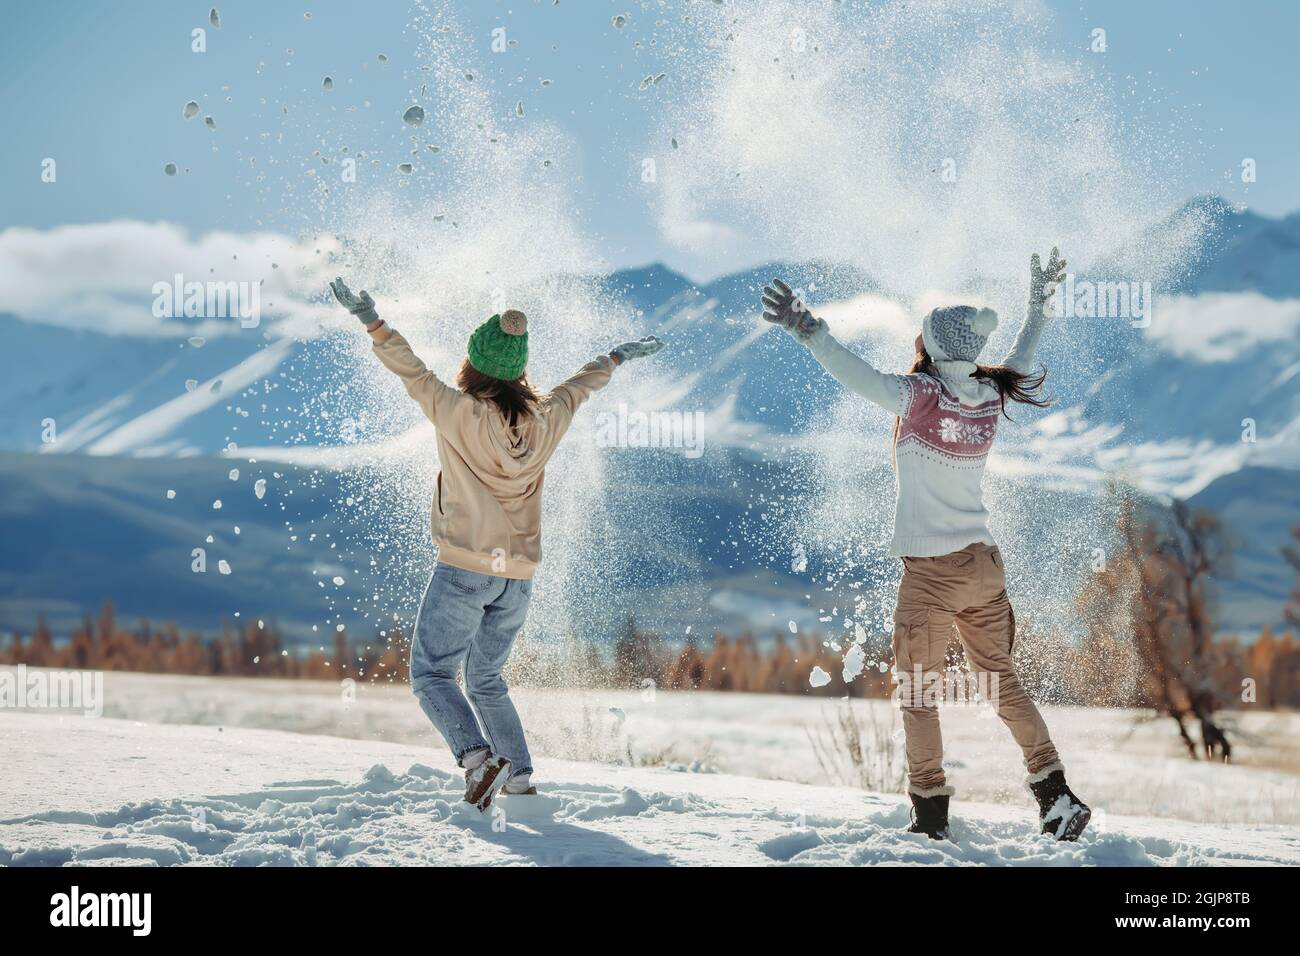 Deux jeunes filles heureuses s'amusent et se lancent dans la neige en montagne. Concept vacances d'hiver Banque D'Images